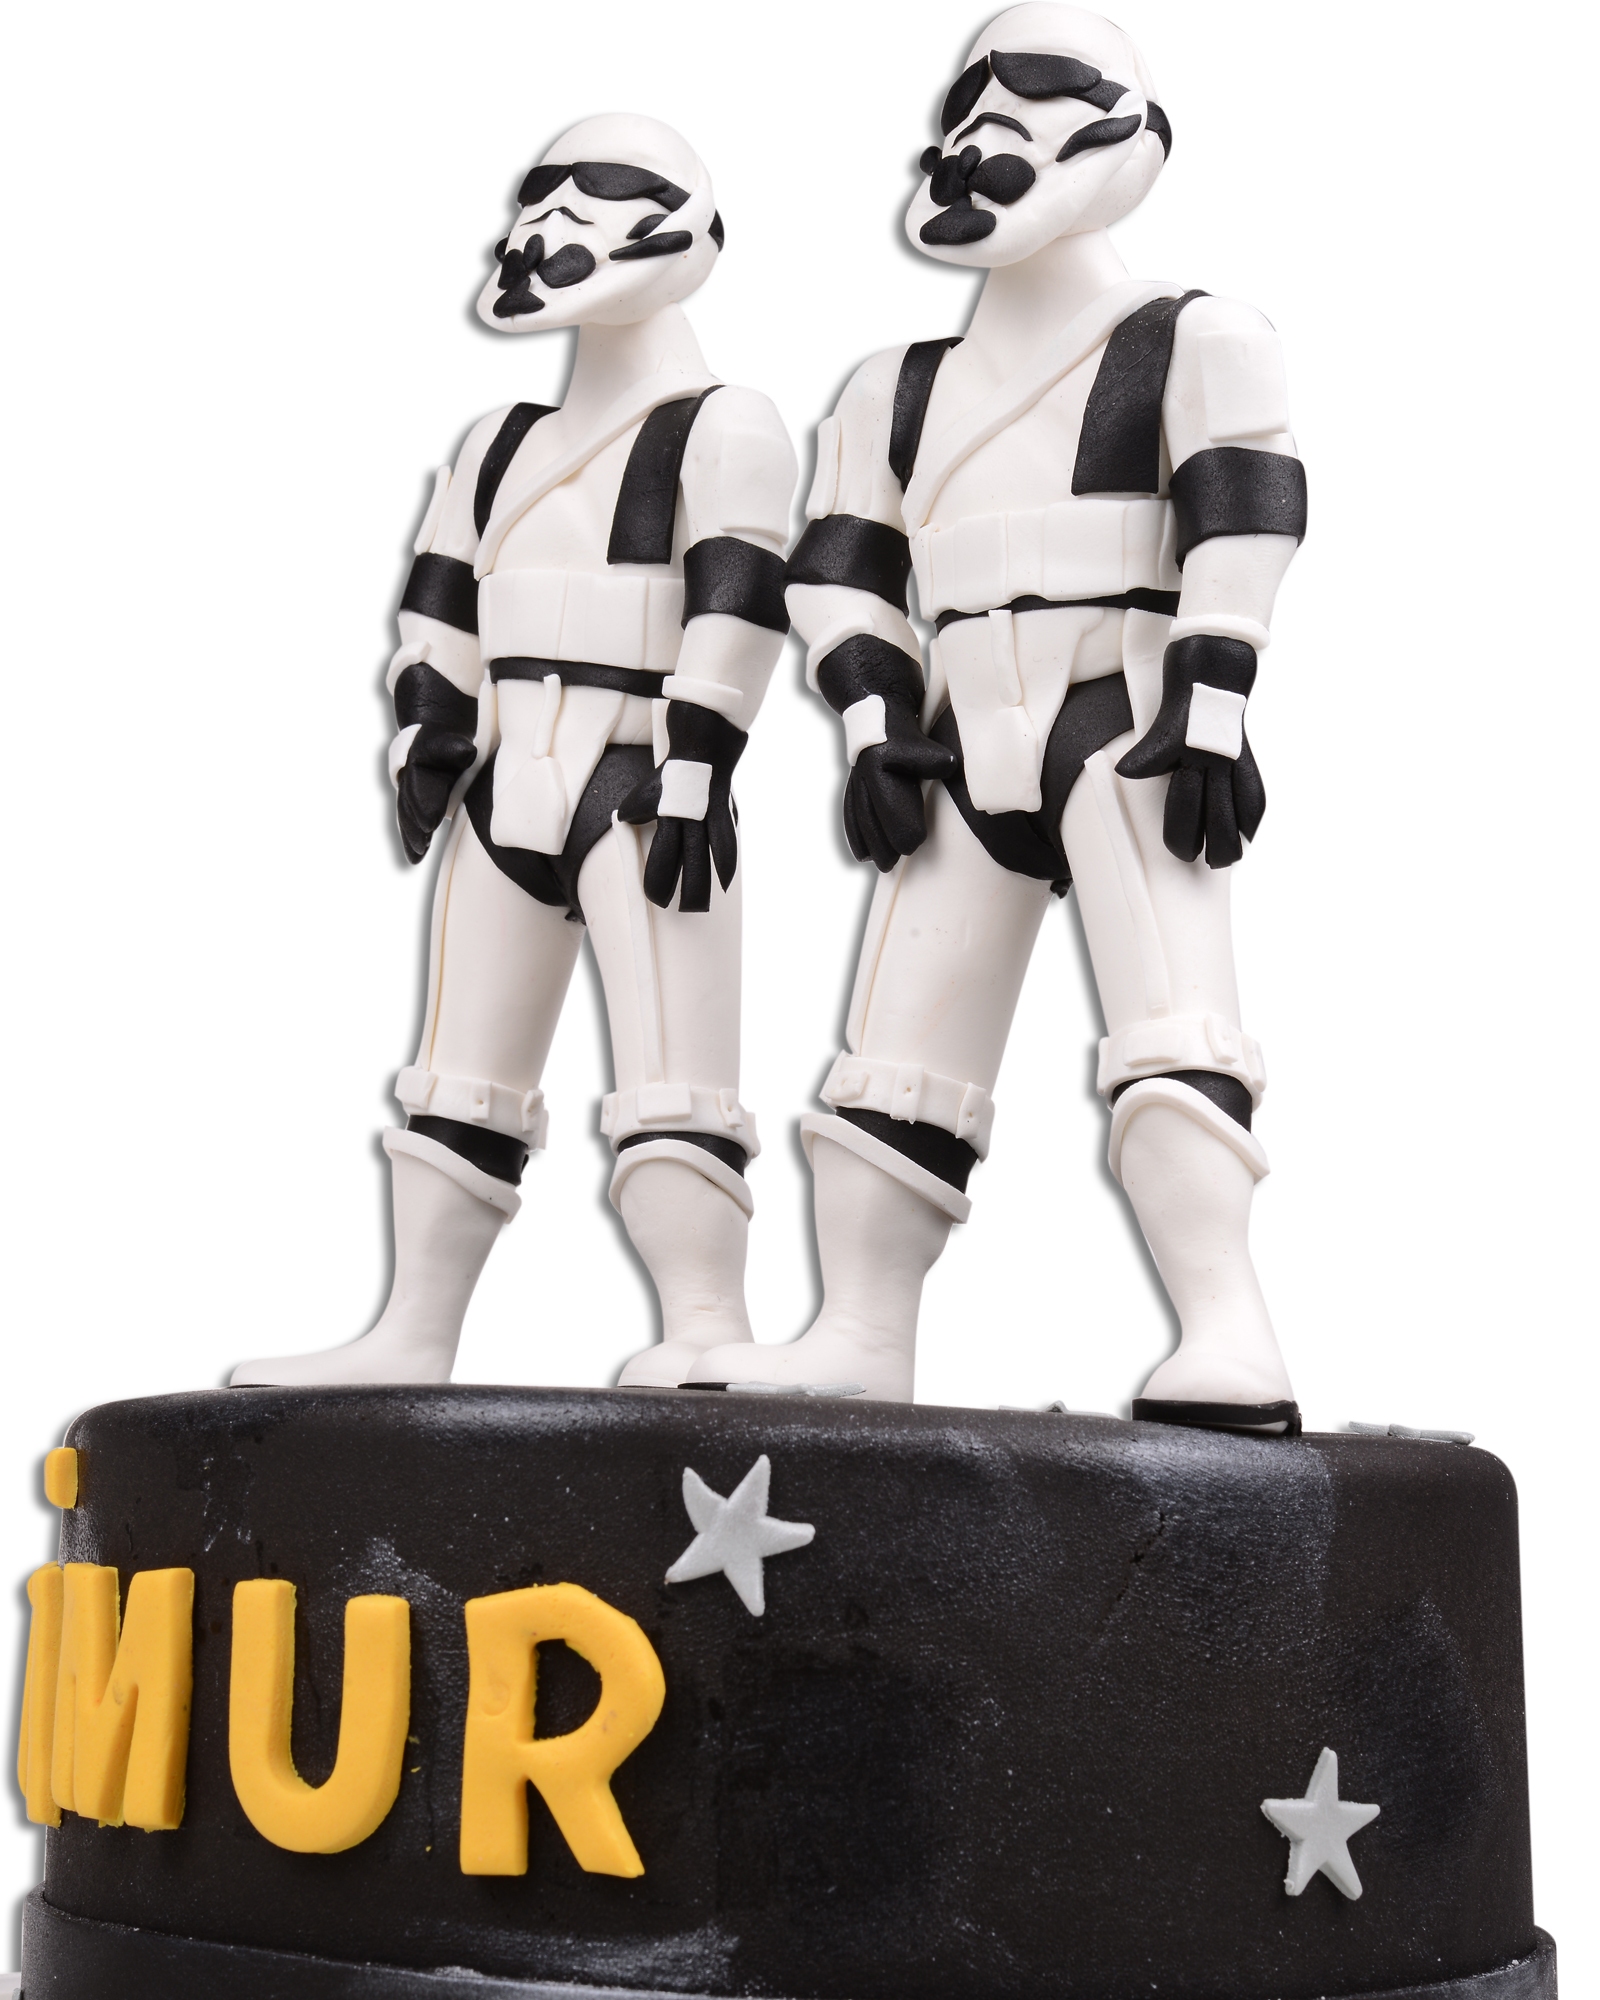 Klon Askerleri Star Wars Doğum Günü Pastası  1